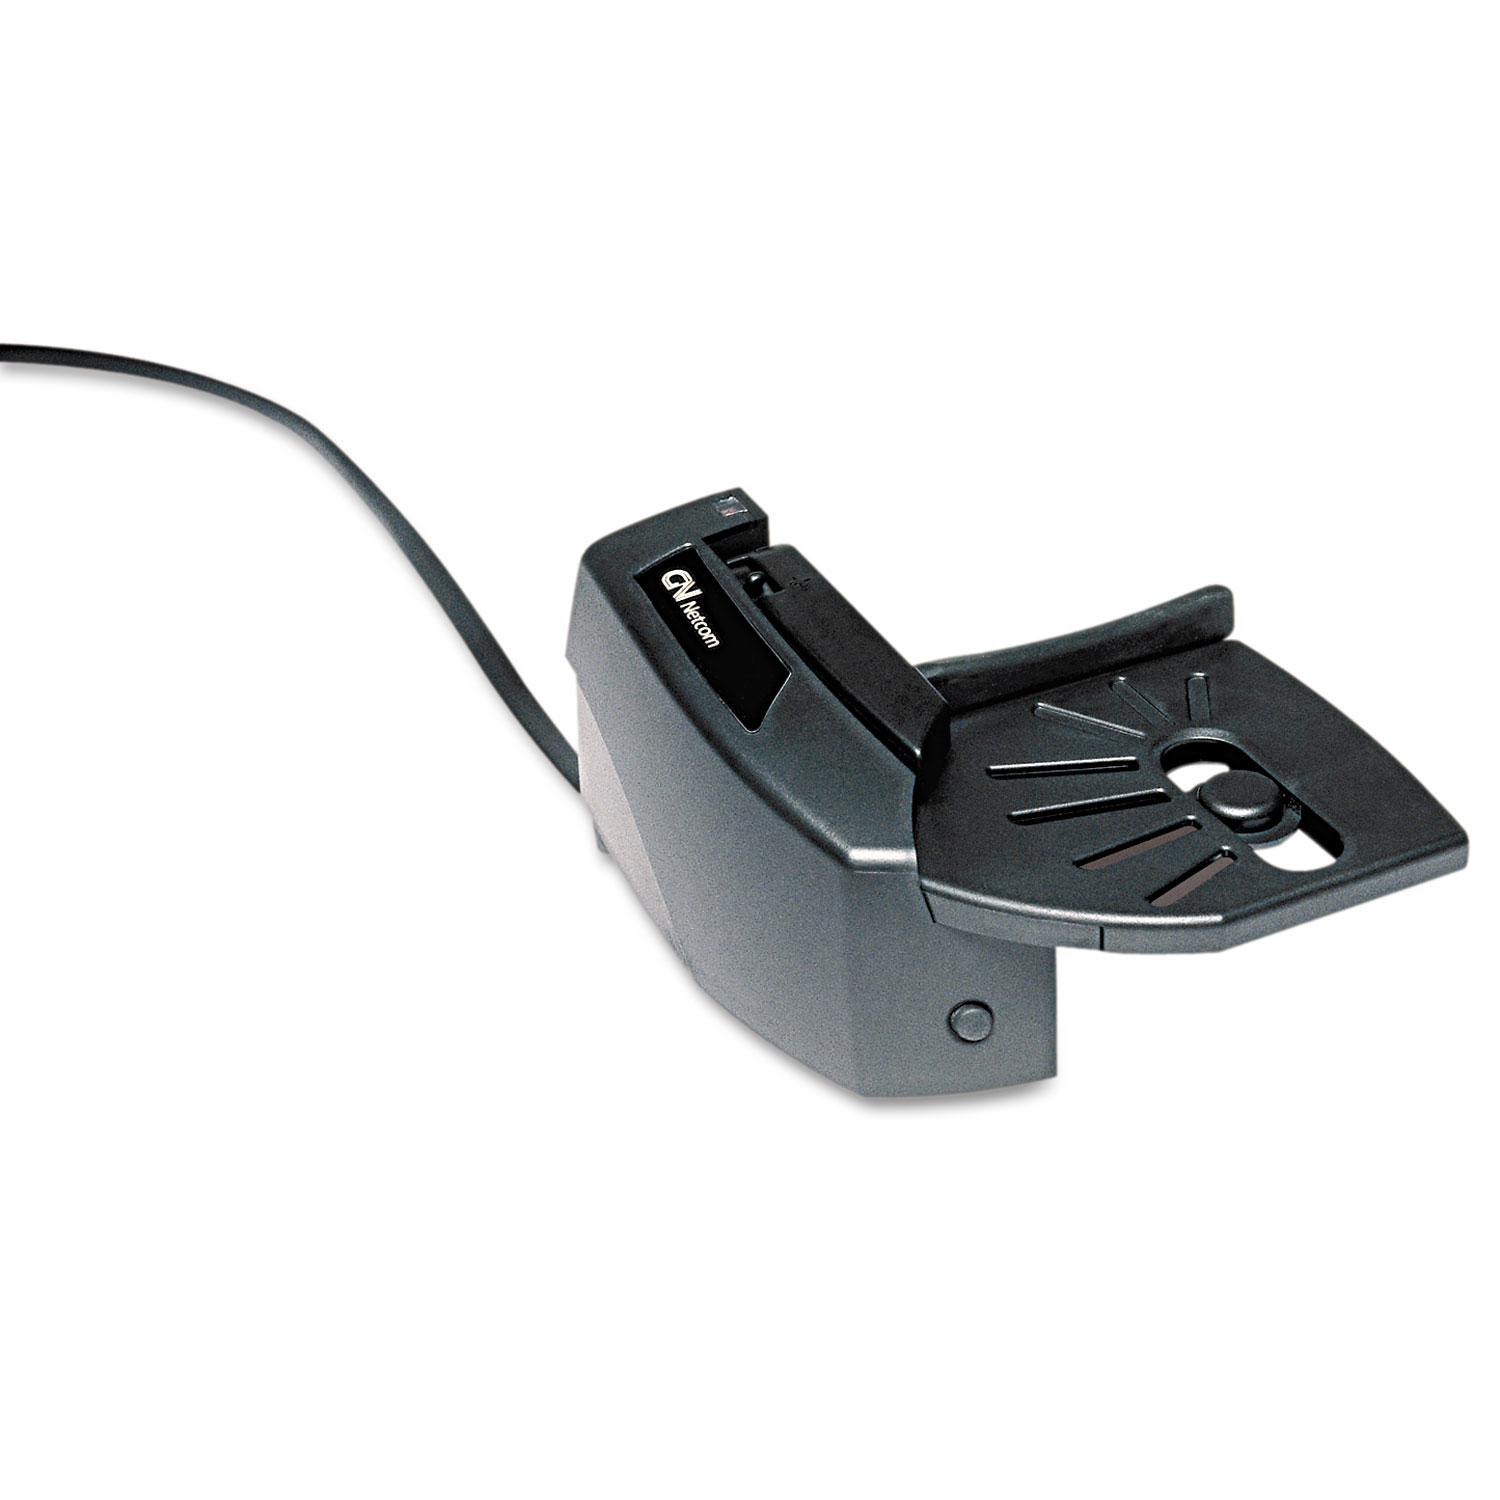  GN Netcom 10369 GN1000 Remote Headset Lifter (JBR010369) 